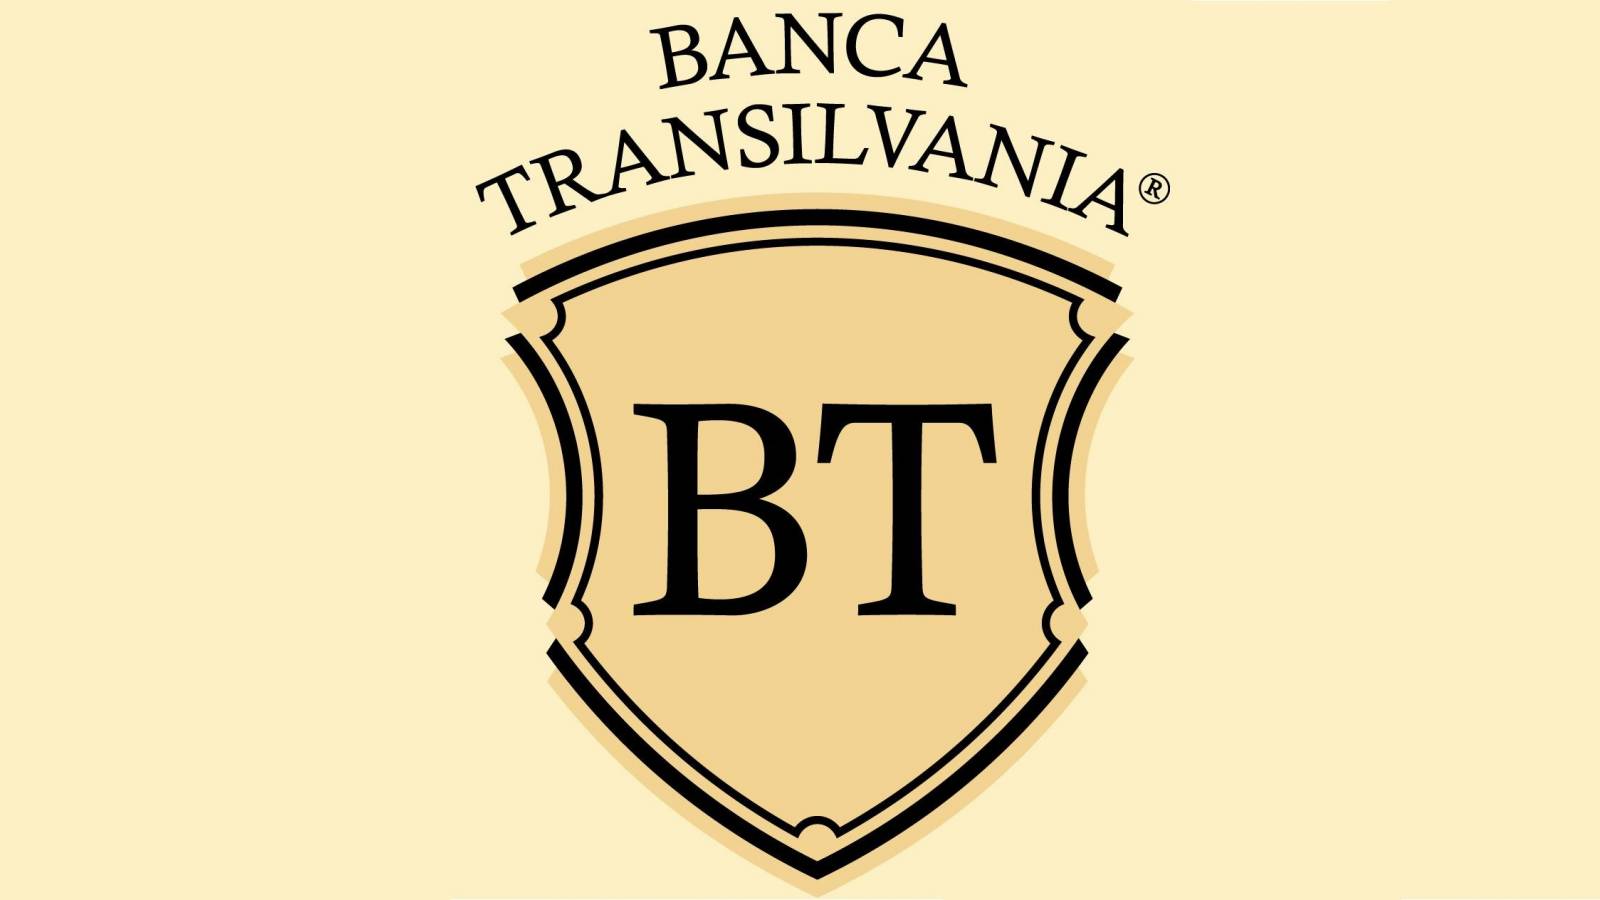 BANCA Transilvania donates